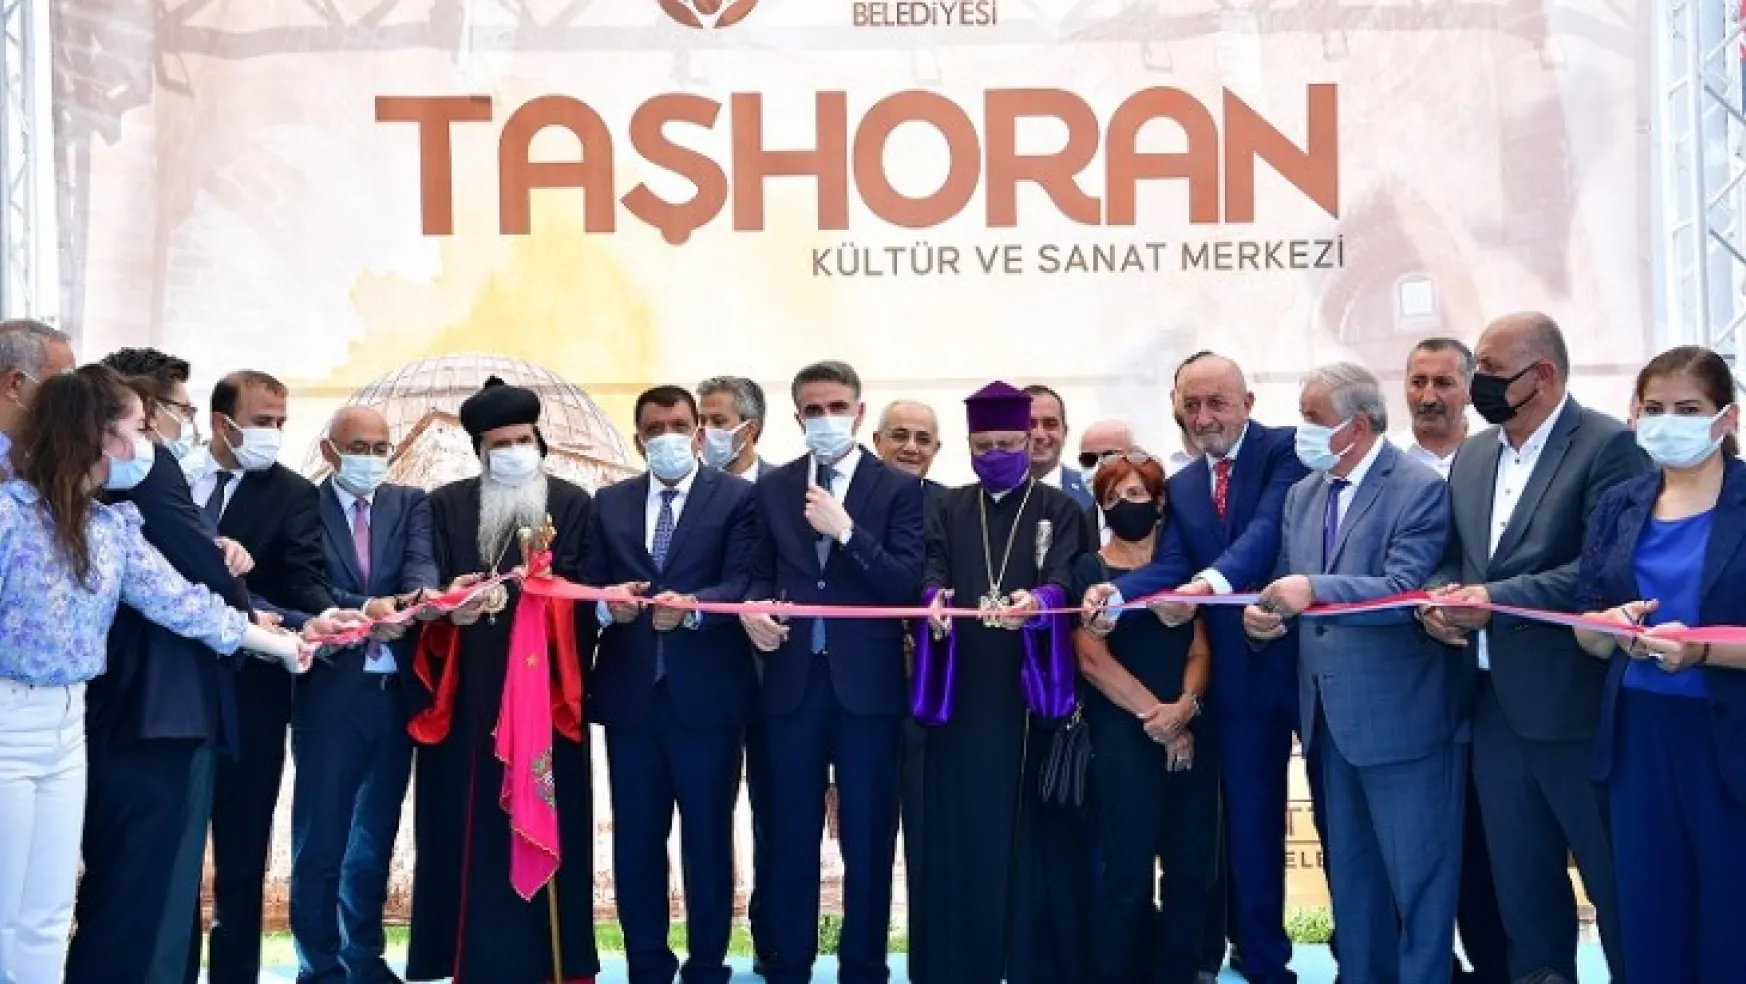 Taşhoran Kültür Ve Sanat Merkezi Açılışı Gerçekleştirildi